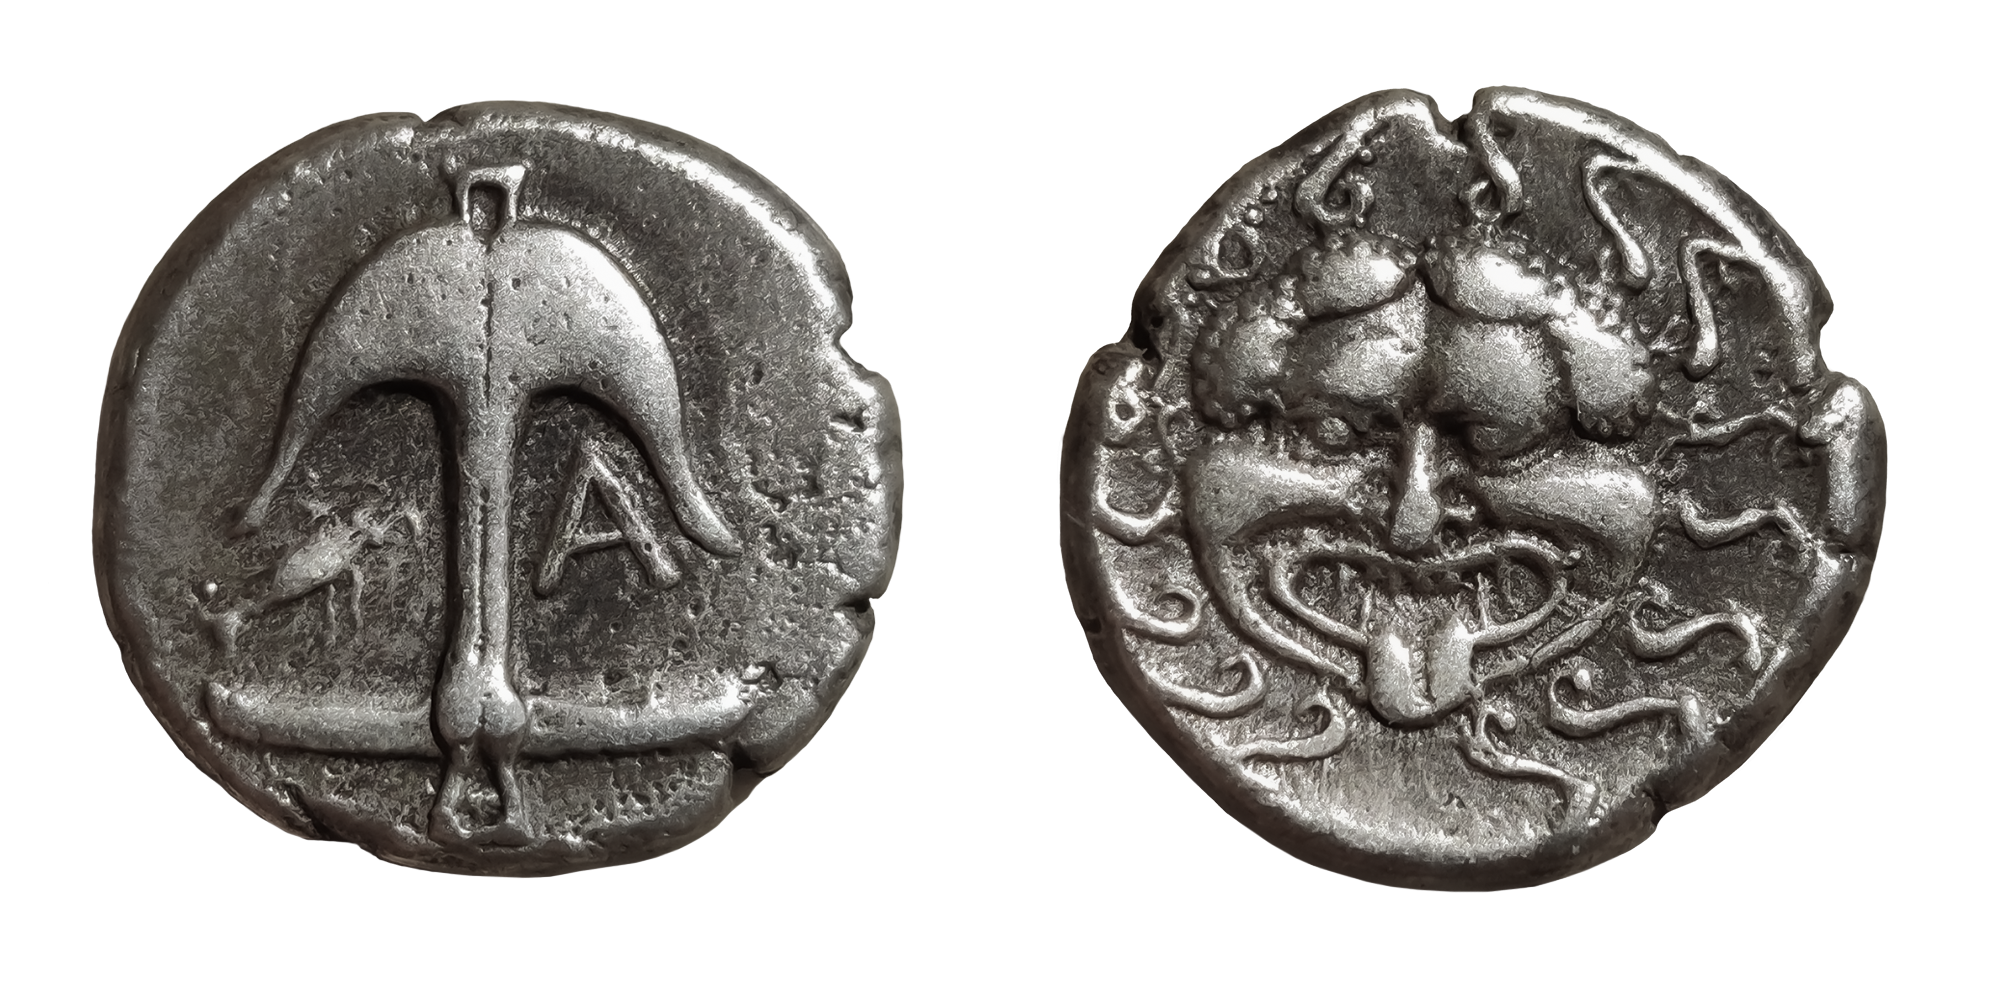   Legendarna drachma z Meduzą